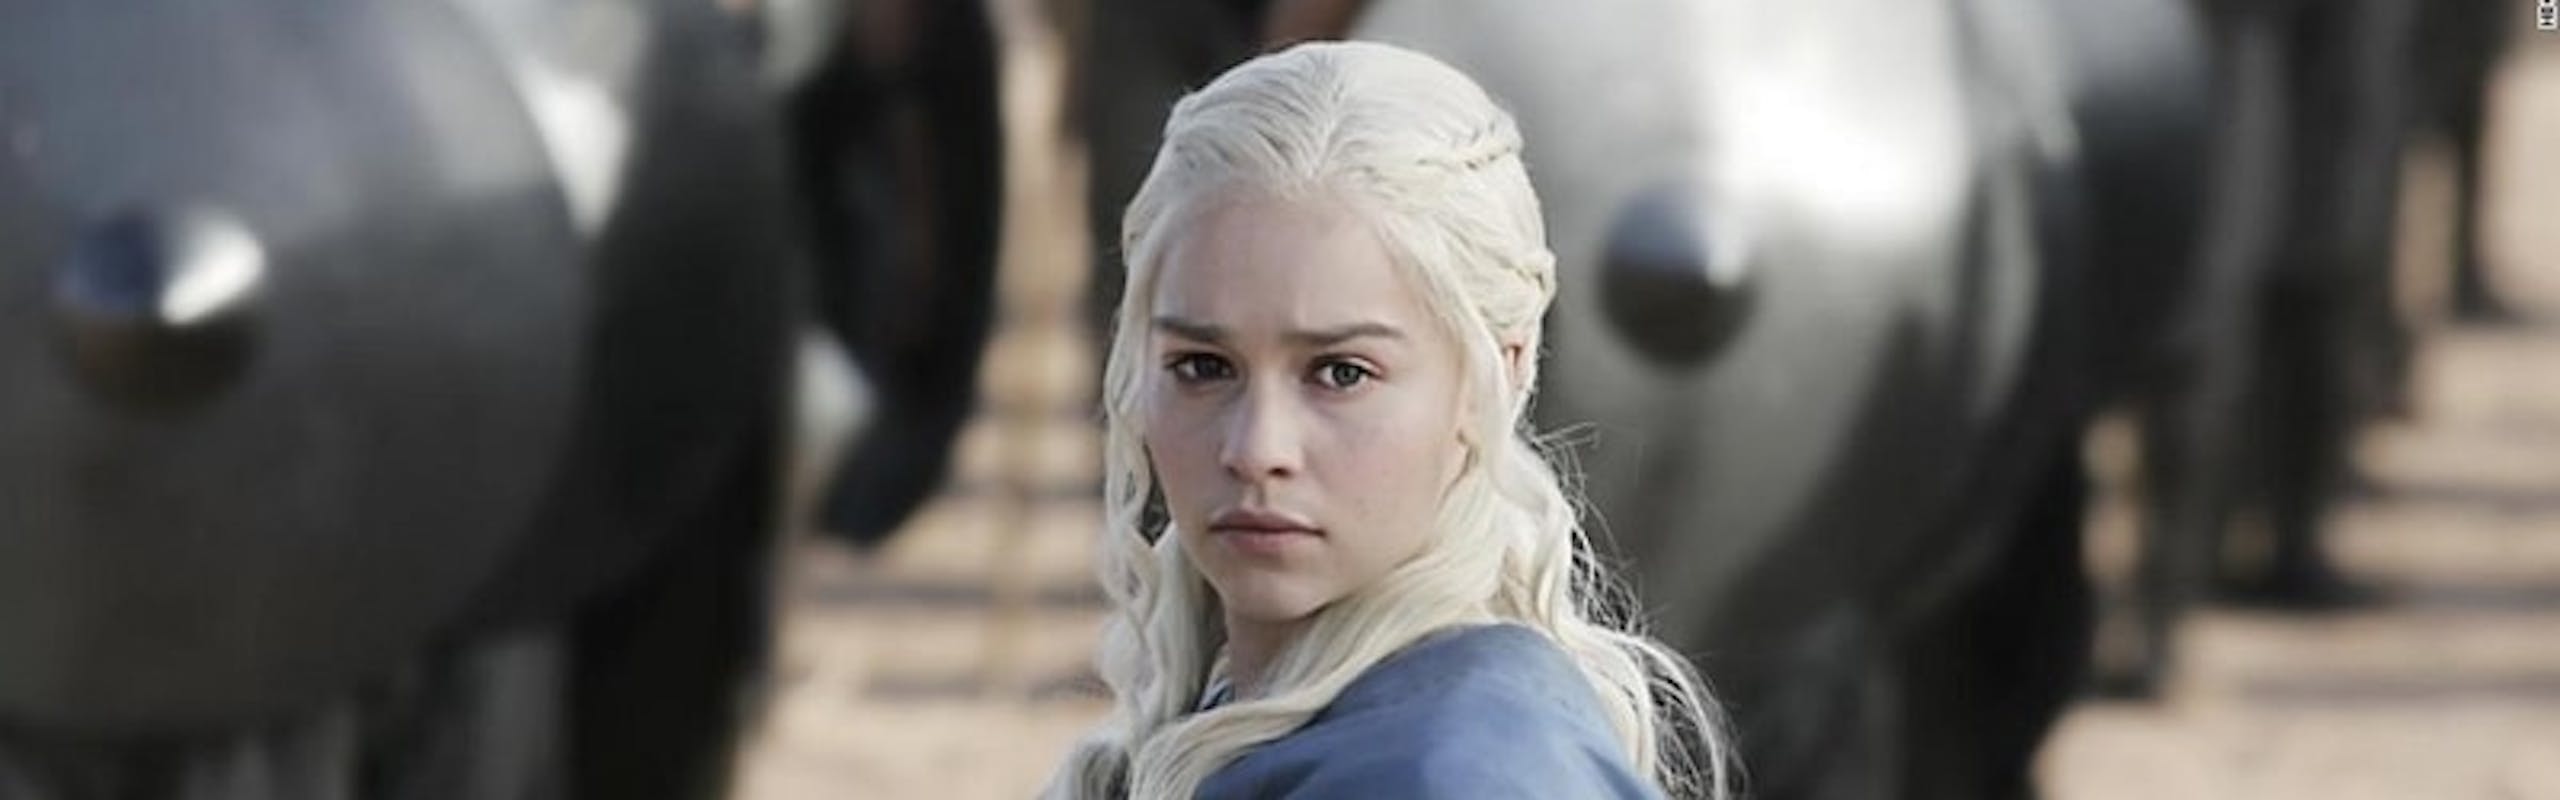 L'attrice Emilia Clarke nei panni del personaggio Daenerys Targaryen. 